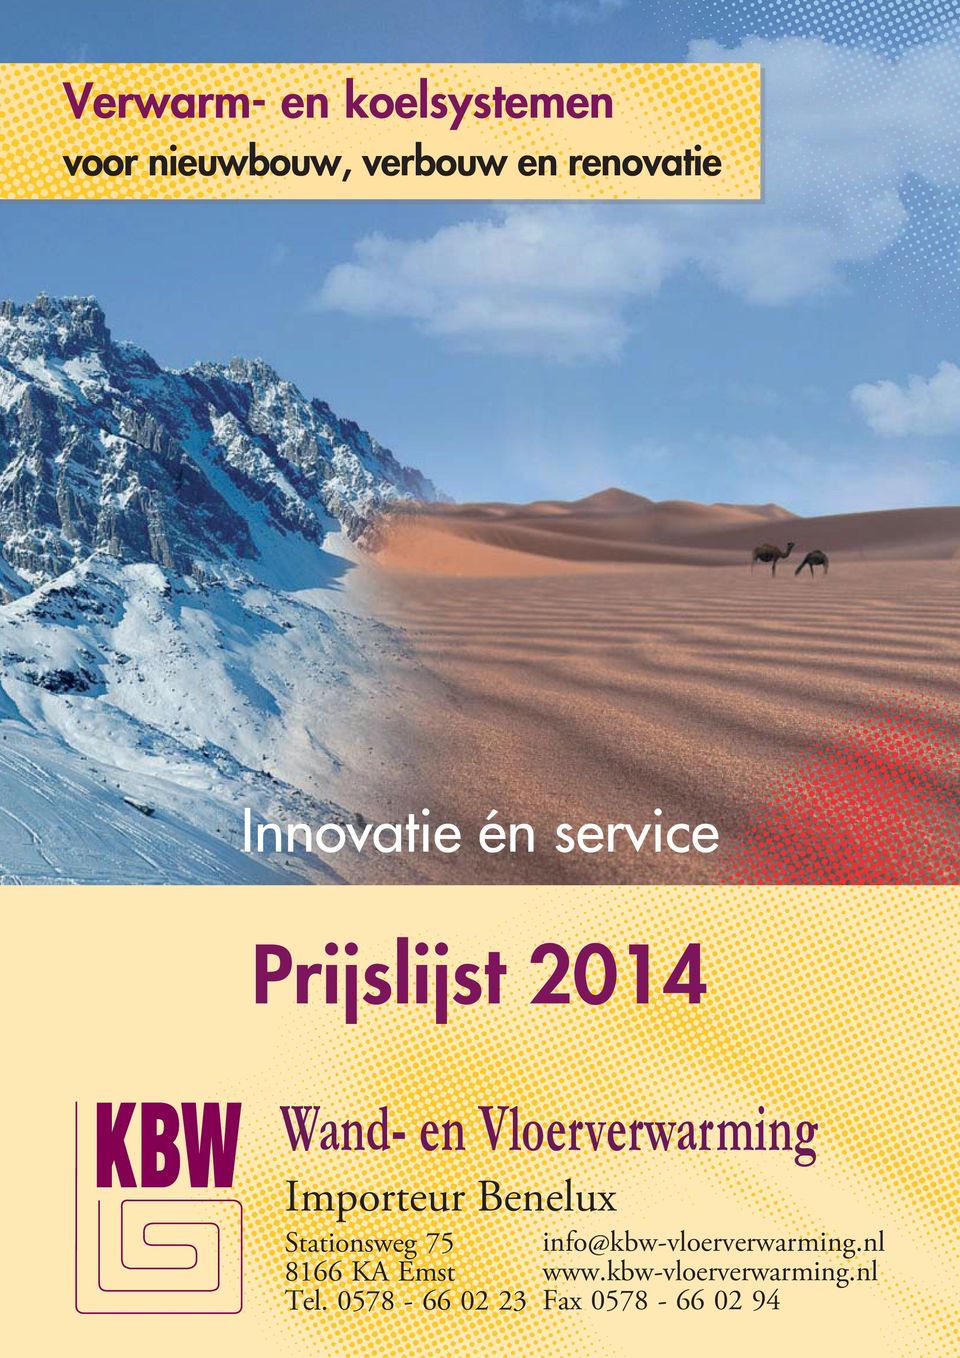 Prijslijst 2014 Wand- en Vloerverwarming Importeur Benelux Stationsweg 75 8166 KA